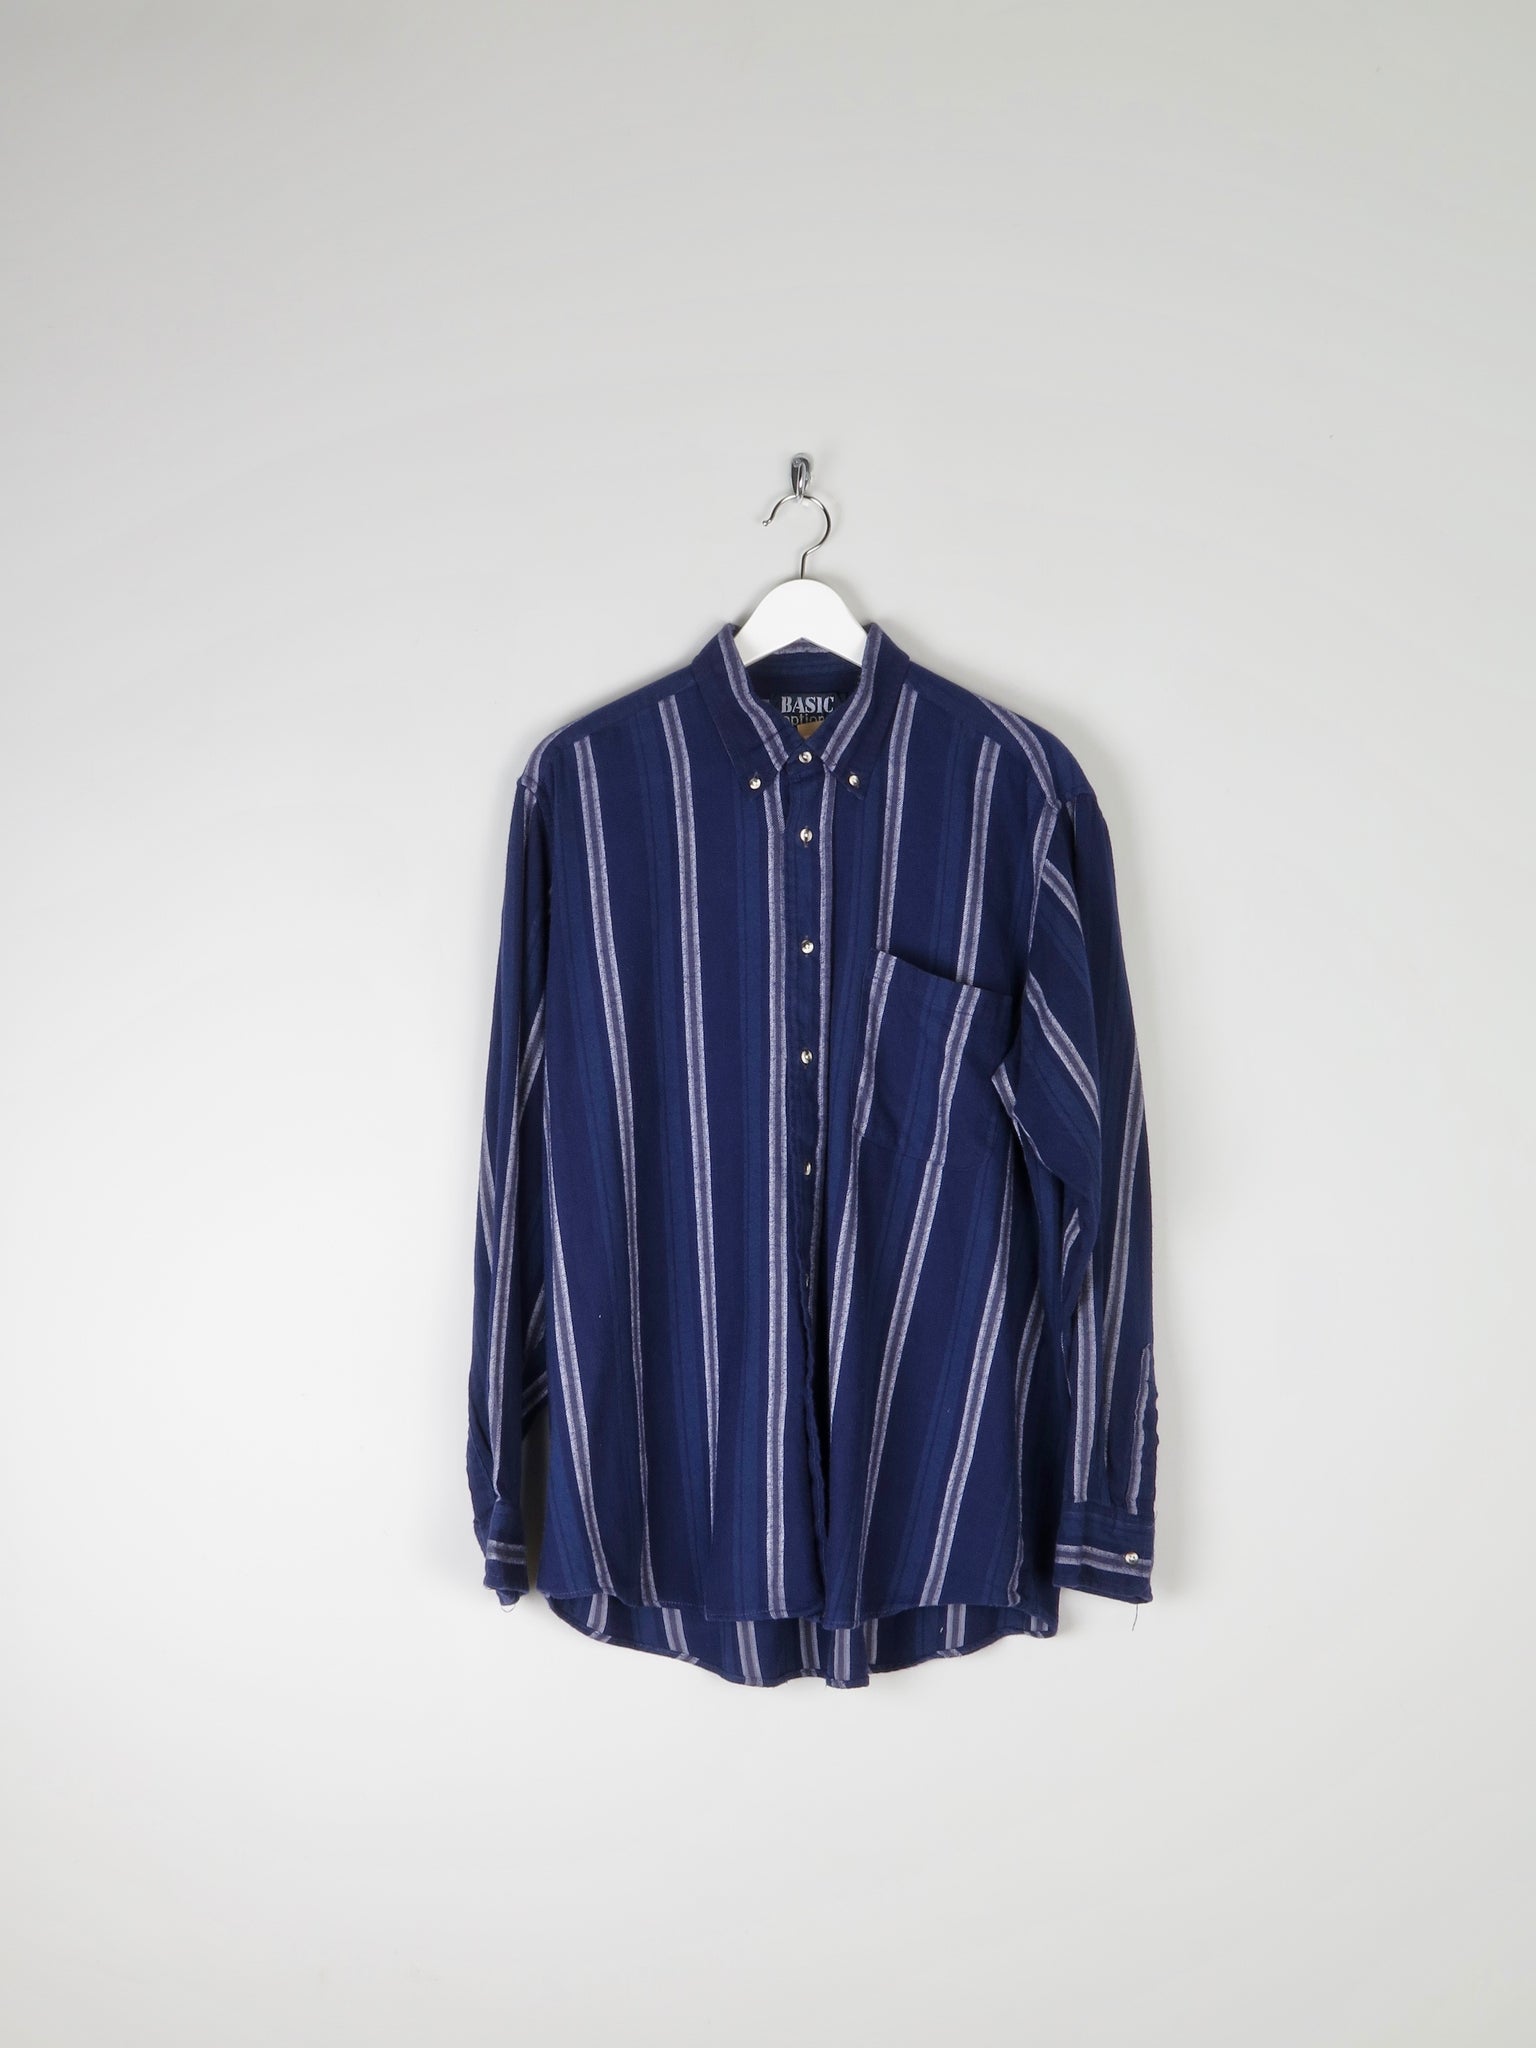 Men’s Rich Blue Striped Flannel Shirt L